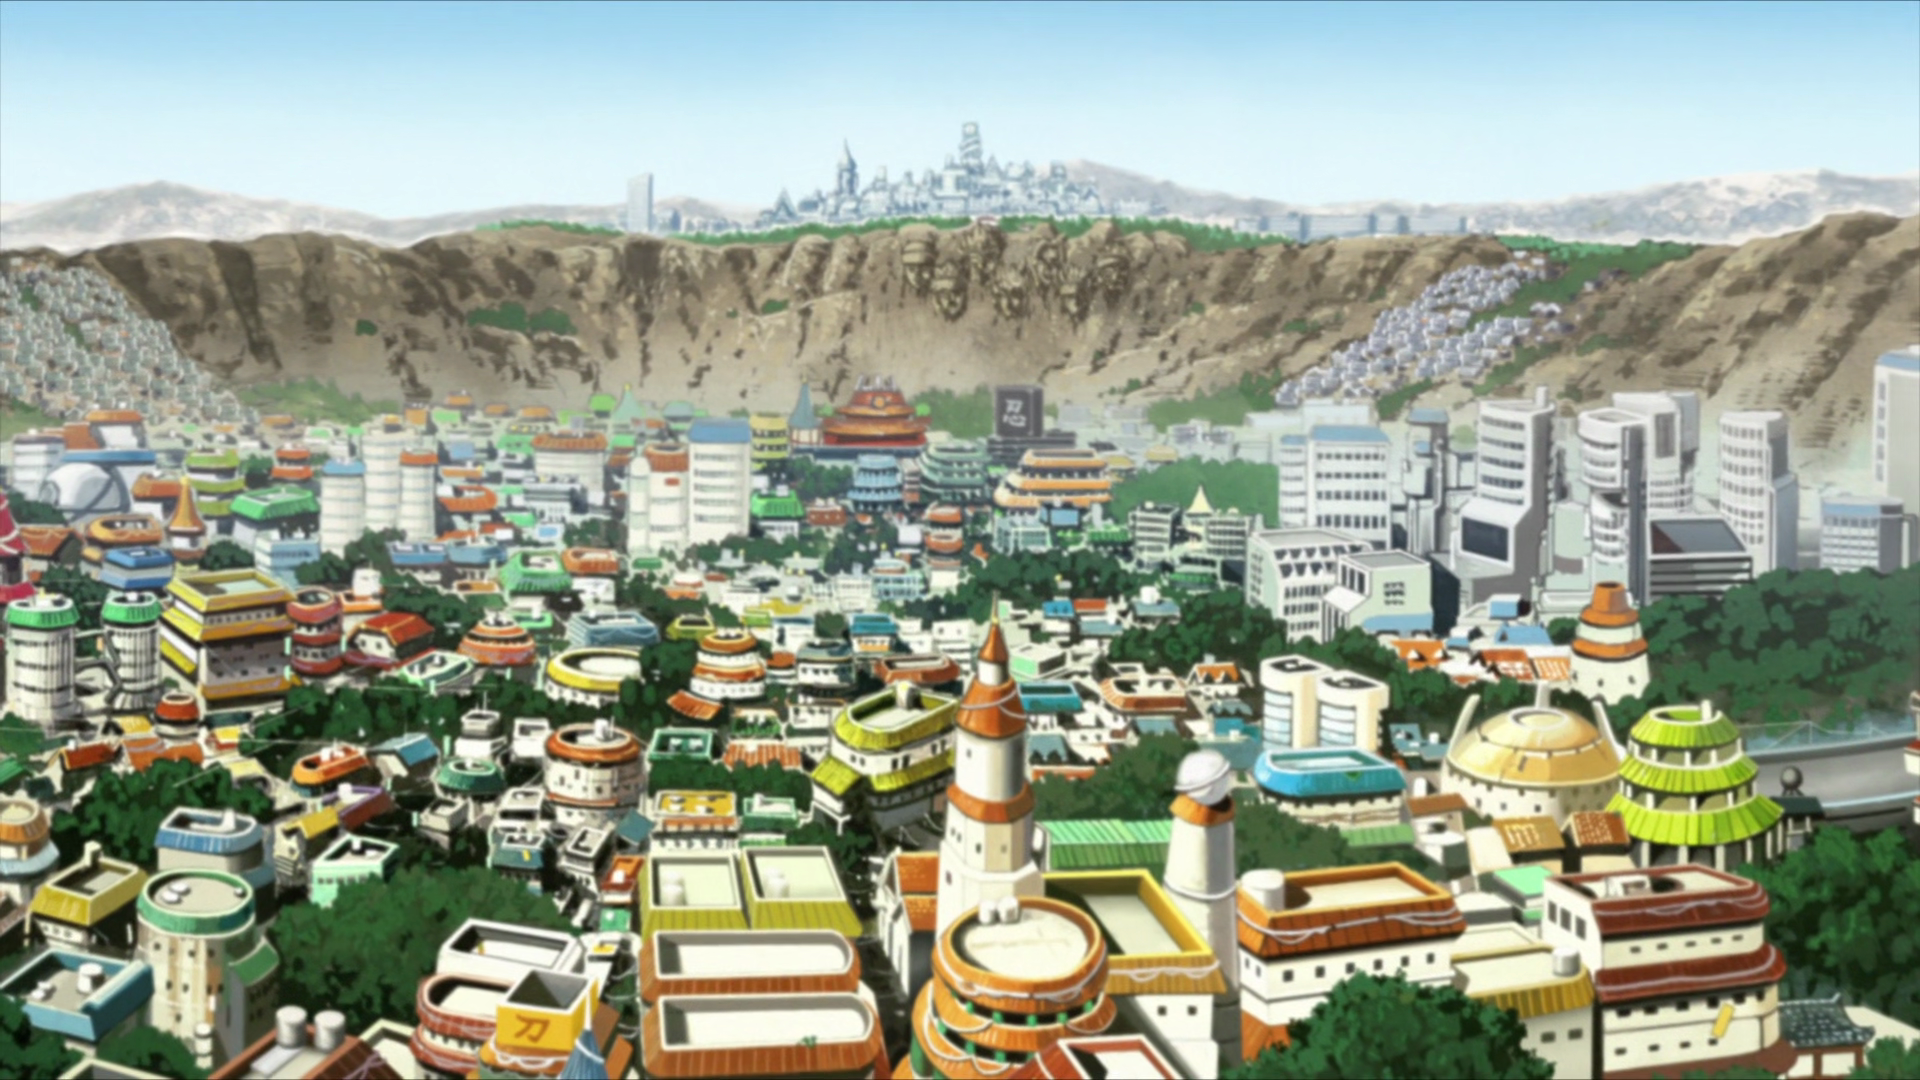 Hokage 7 (Uzumaki Naruto) Konohagakure, Wiki